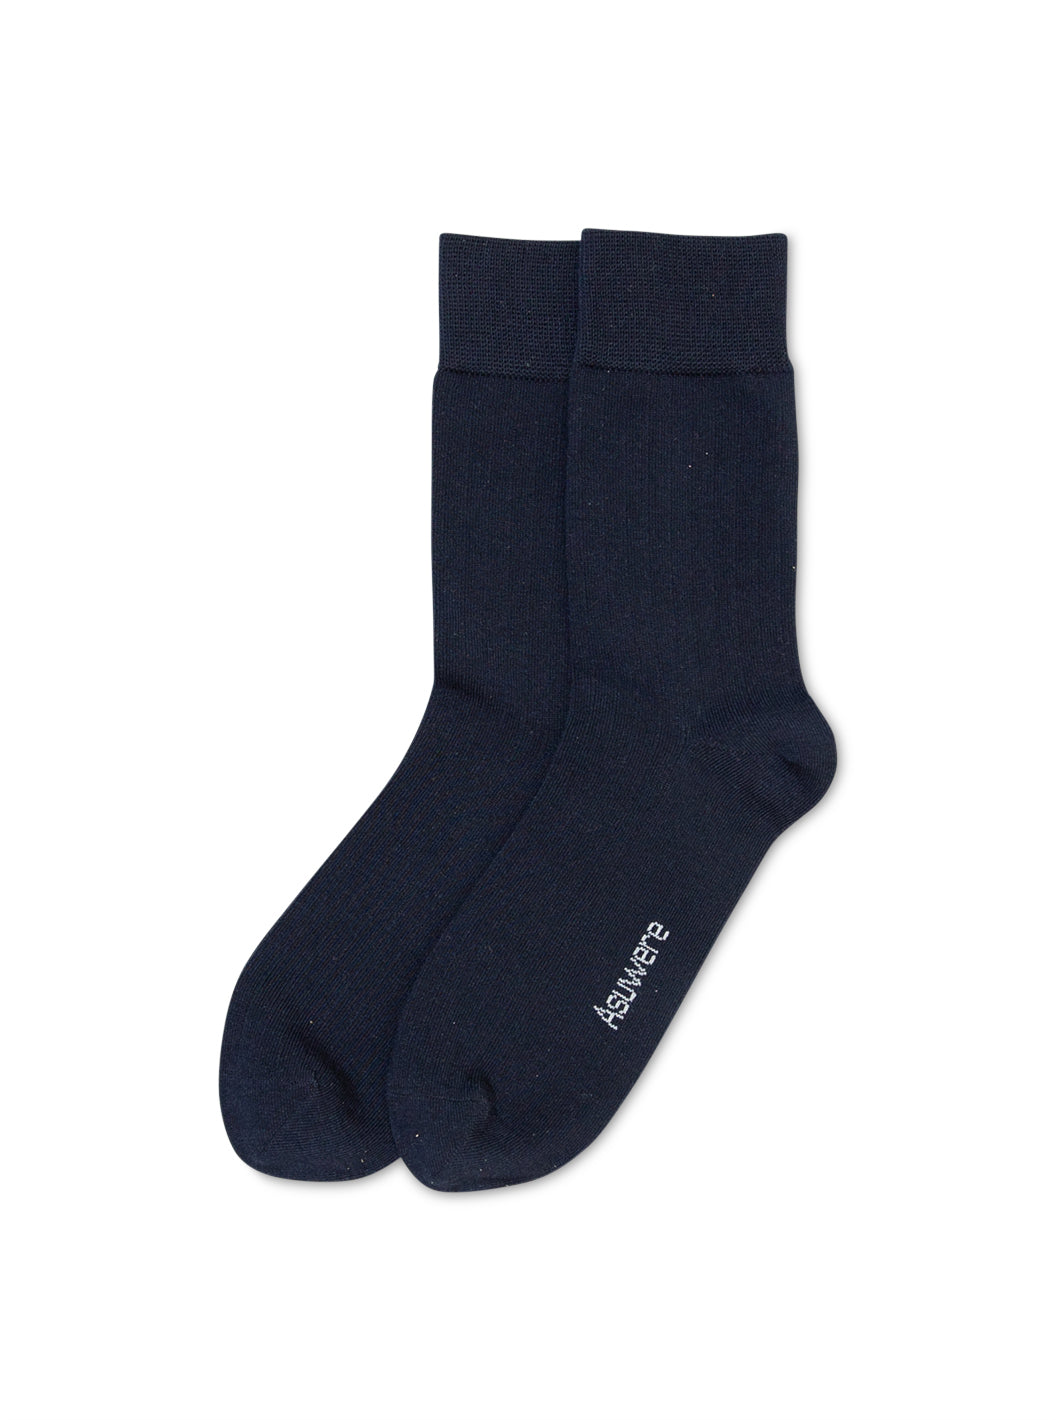 Essential Sock Navy - 1 x Pair